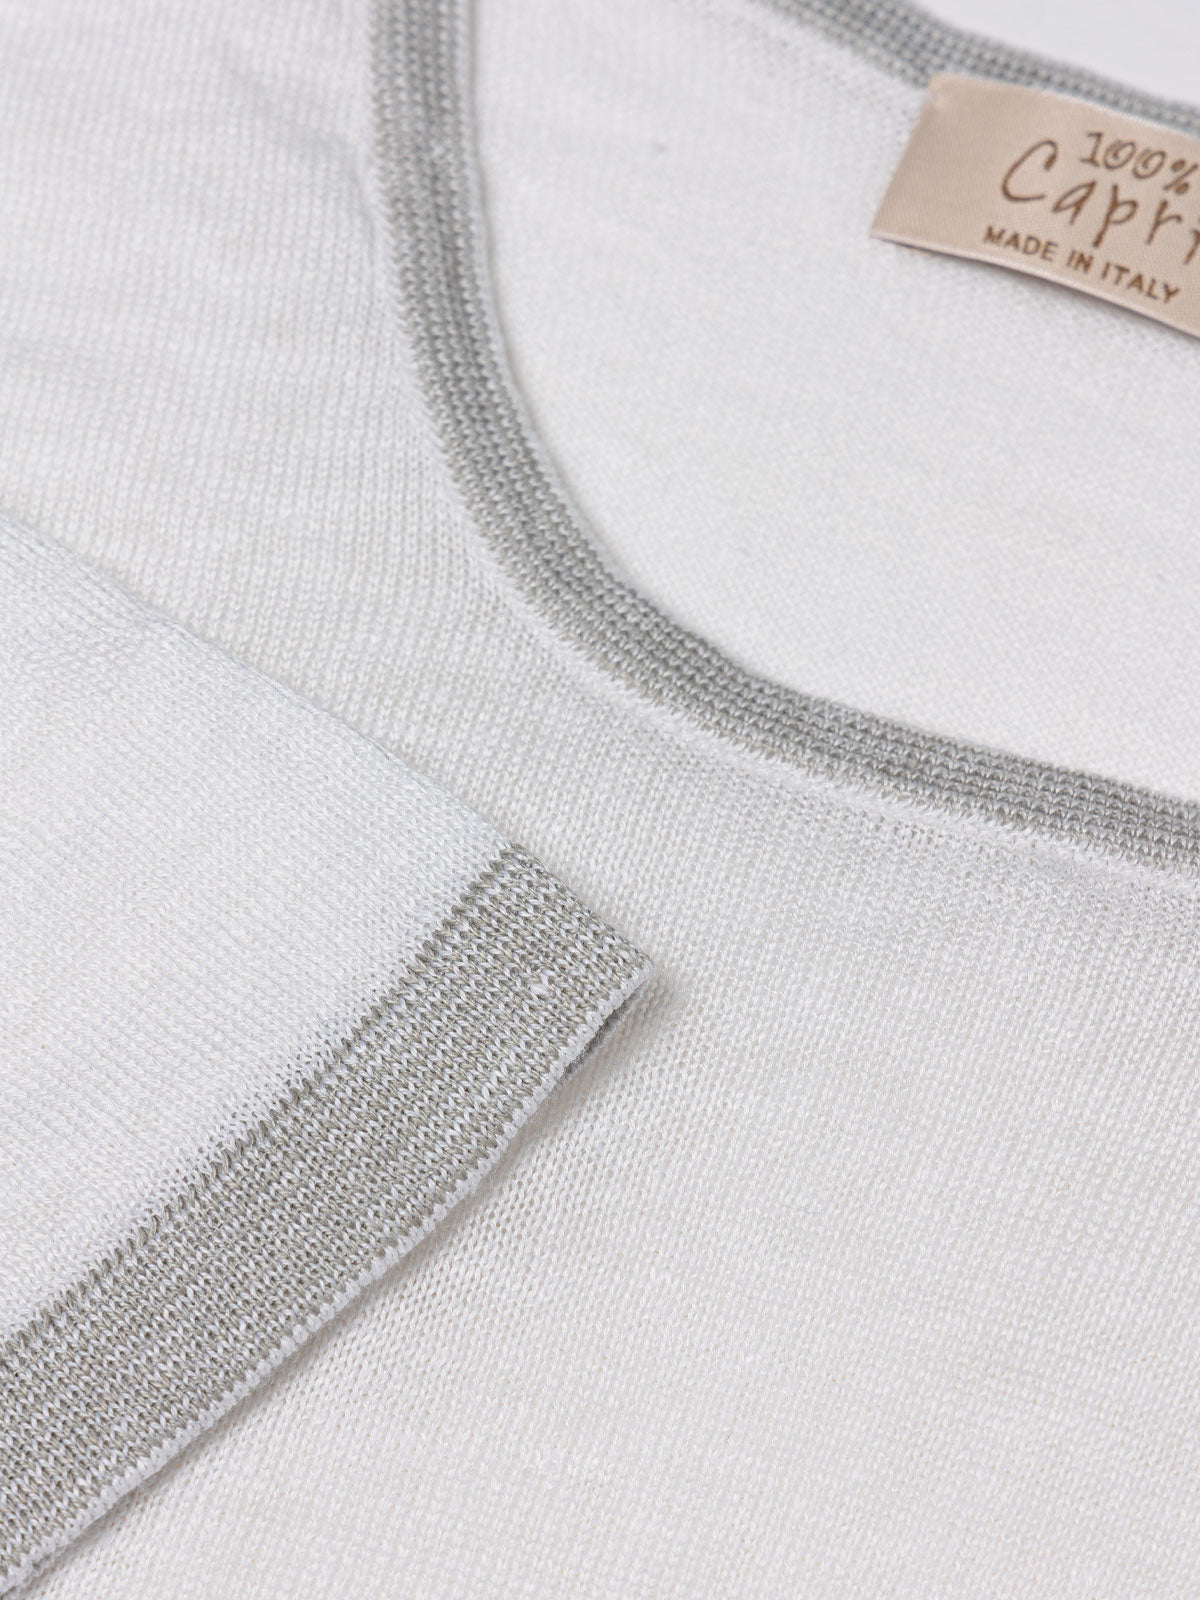 St. Barth linen T-Shirt for man 100% Capri white and light grey linen t-shirt detail